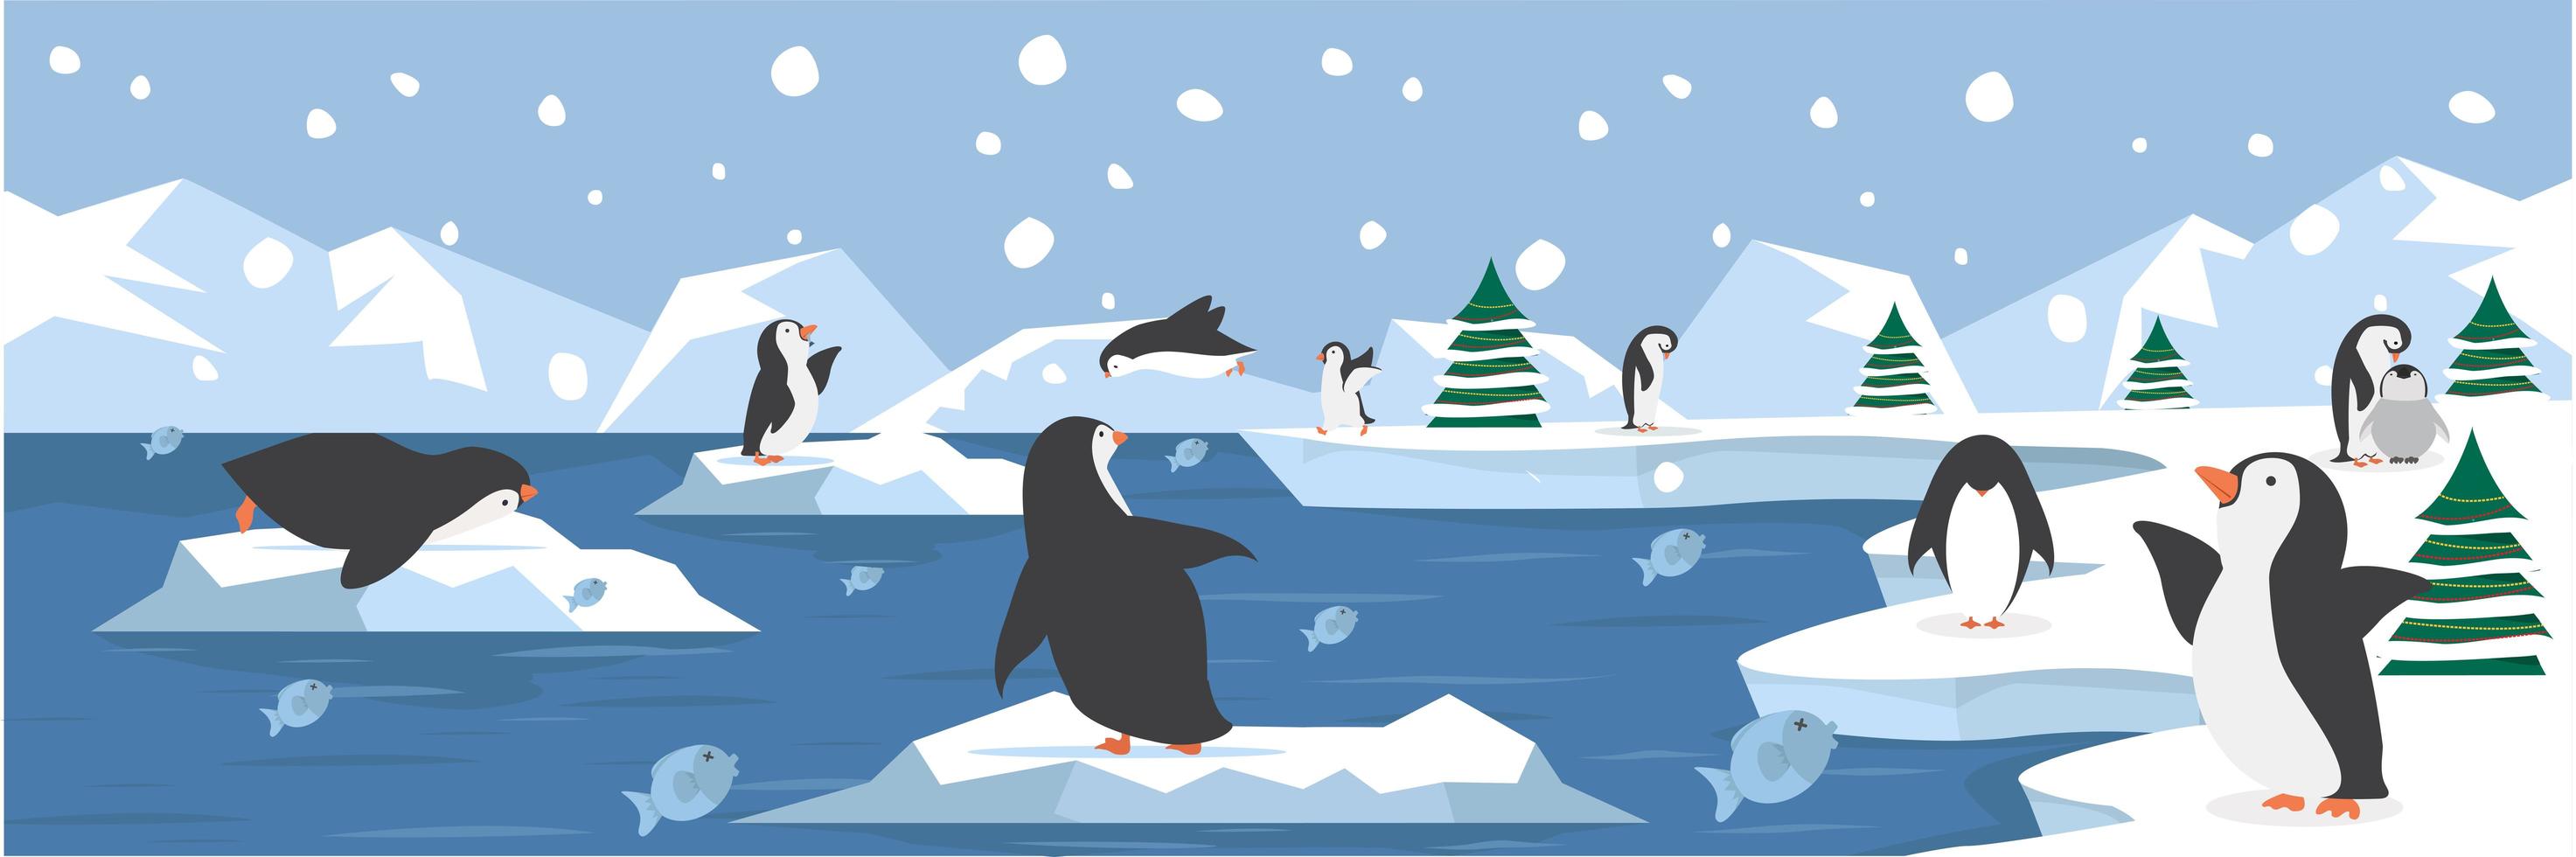 noordpoollandschap met schattige pinguïns vector